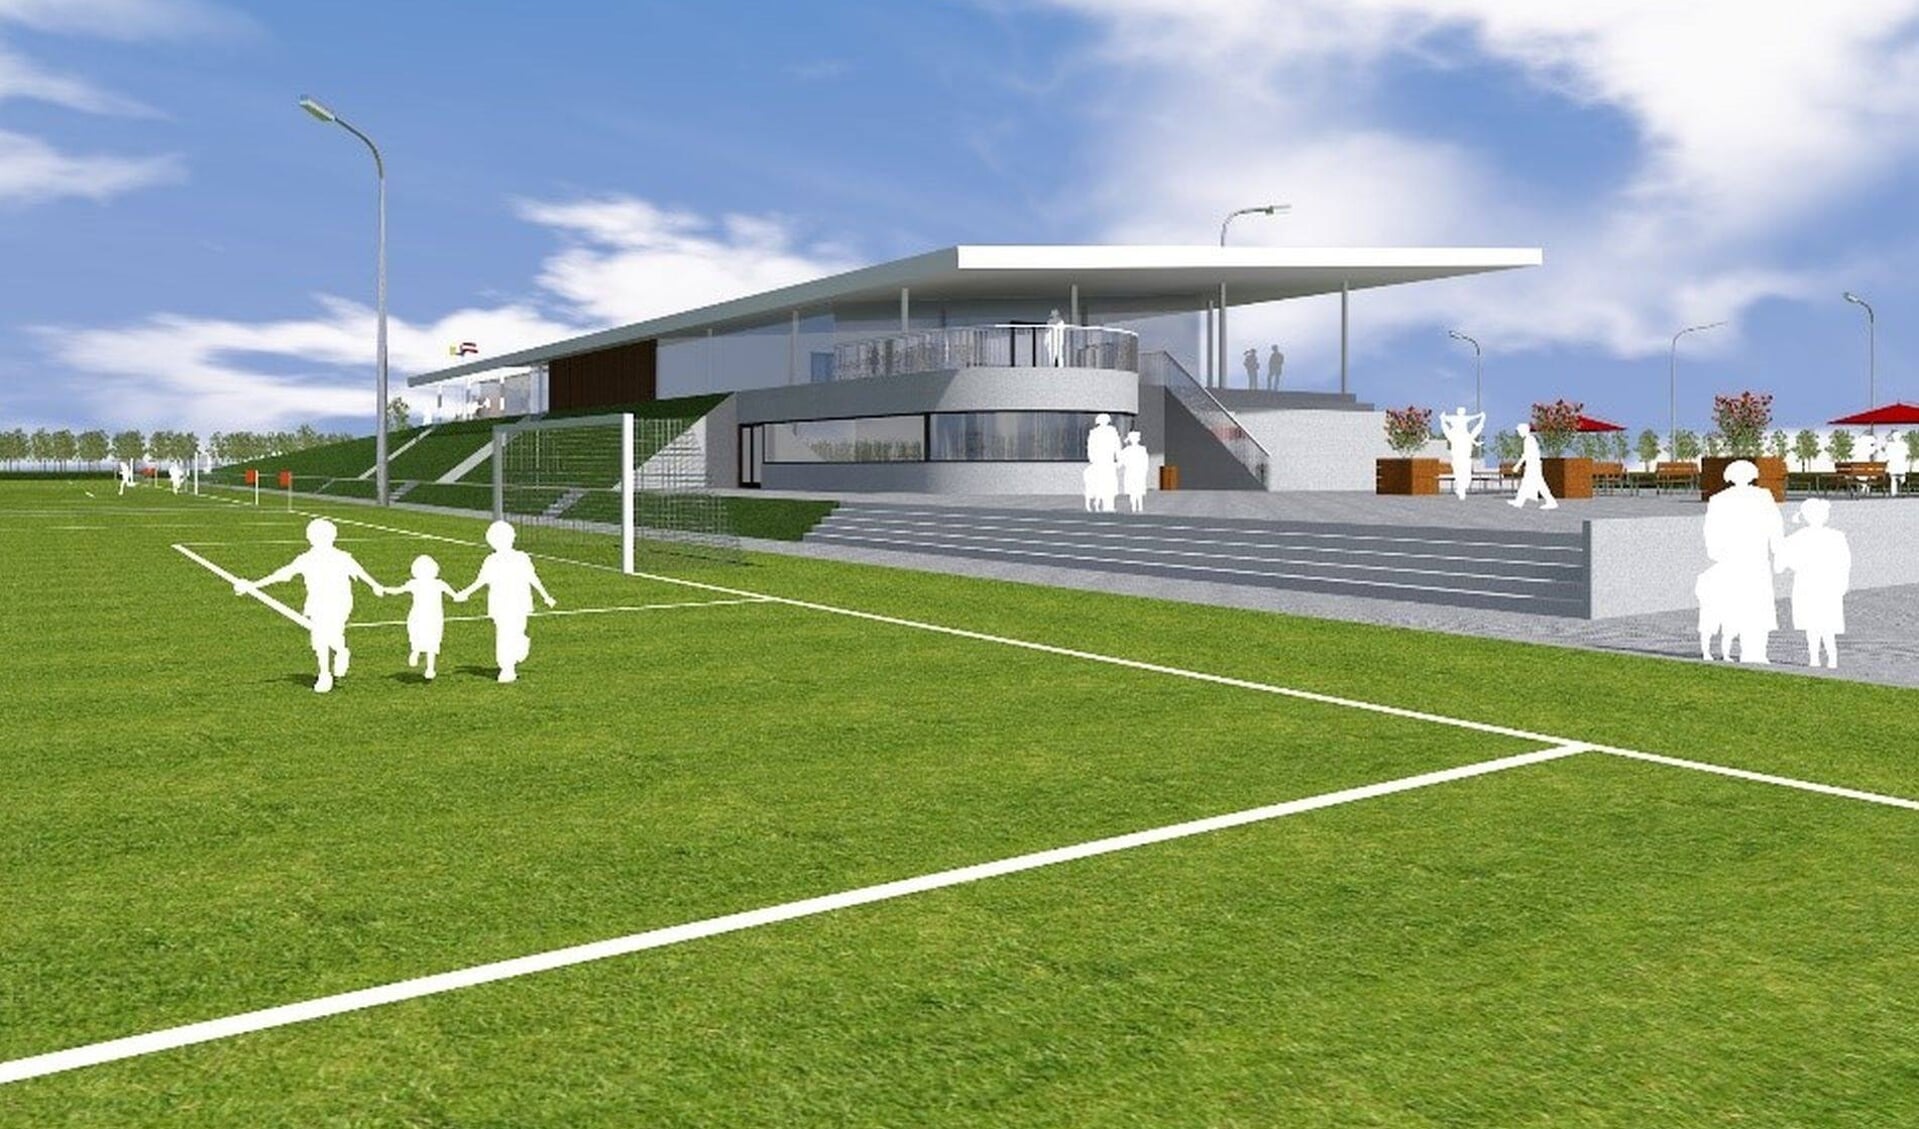 De drie voetbalclubs in de gemeente Grave willen volgend jaar samengaan en een gezamenlijk sportpark betrekken met HC Grave.